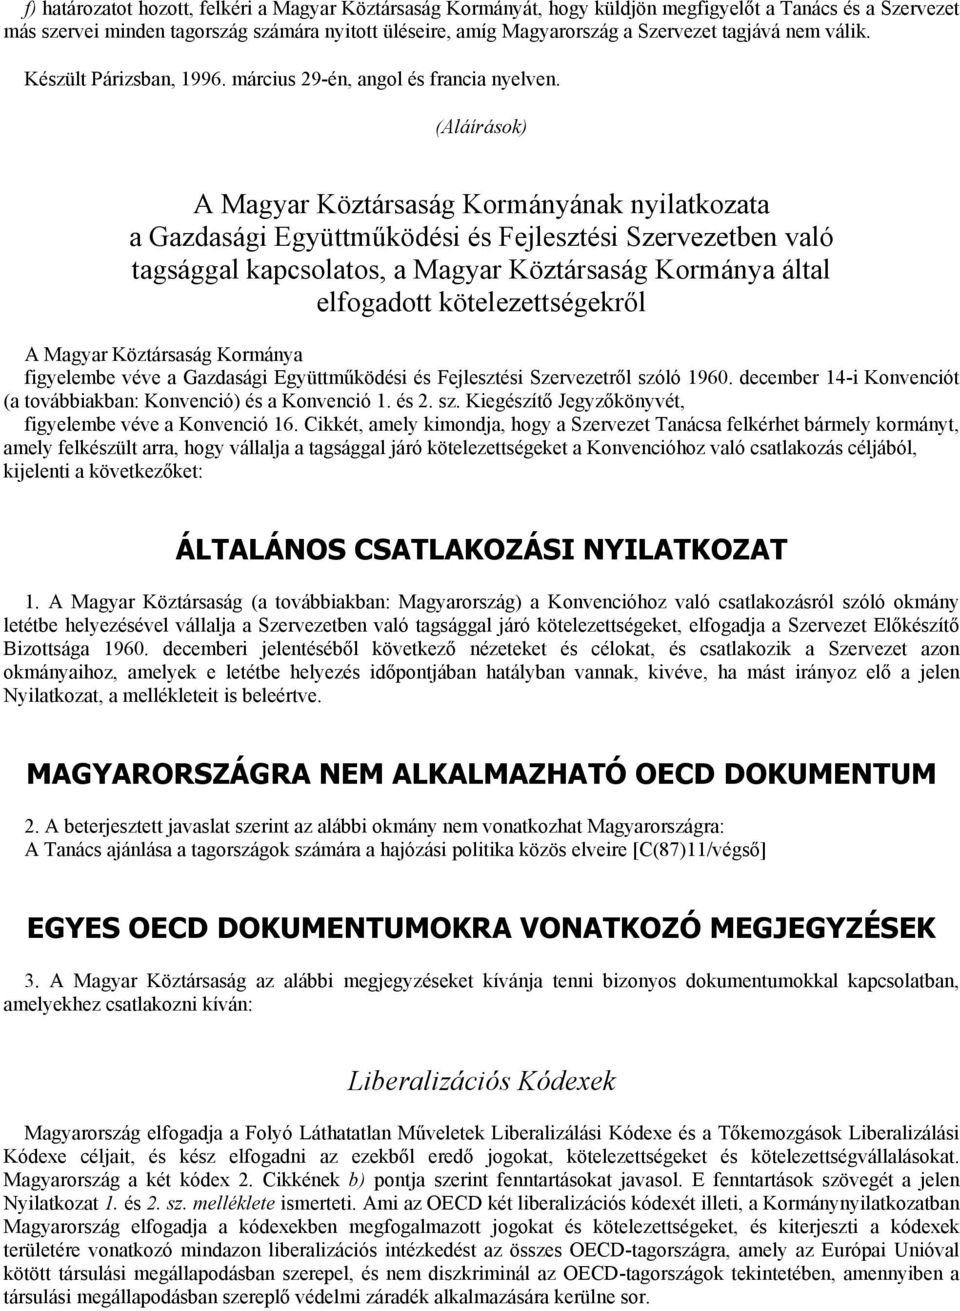 (Aláírások) A Magyar Köztársaság Kormányának nyilatkozata a Gazdasági Együttműködési és Fejlesztési Szervezetben való tagsággal kapcsolatos, a Magyar Köztársaság Kormánya által elfogadott